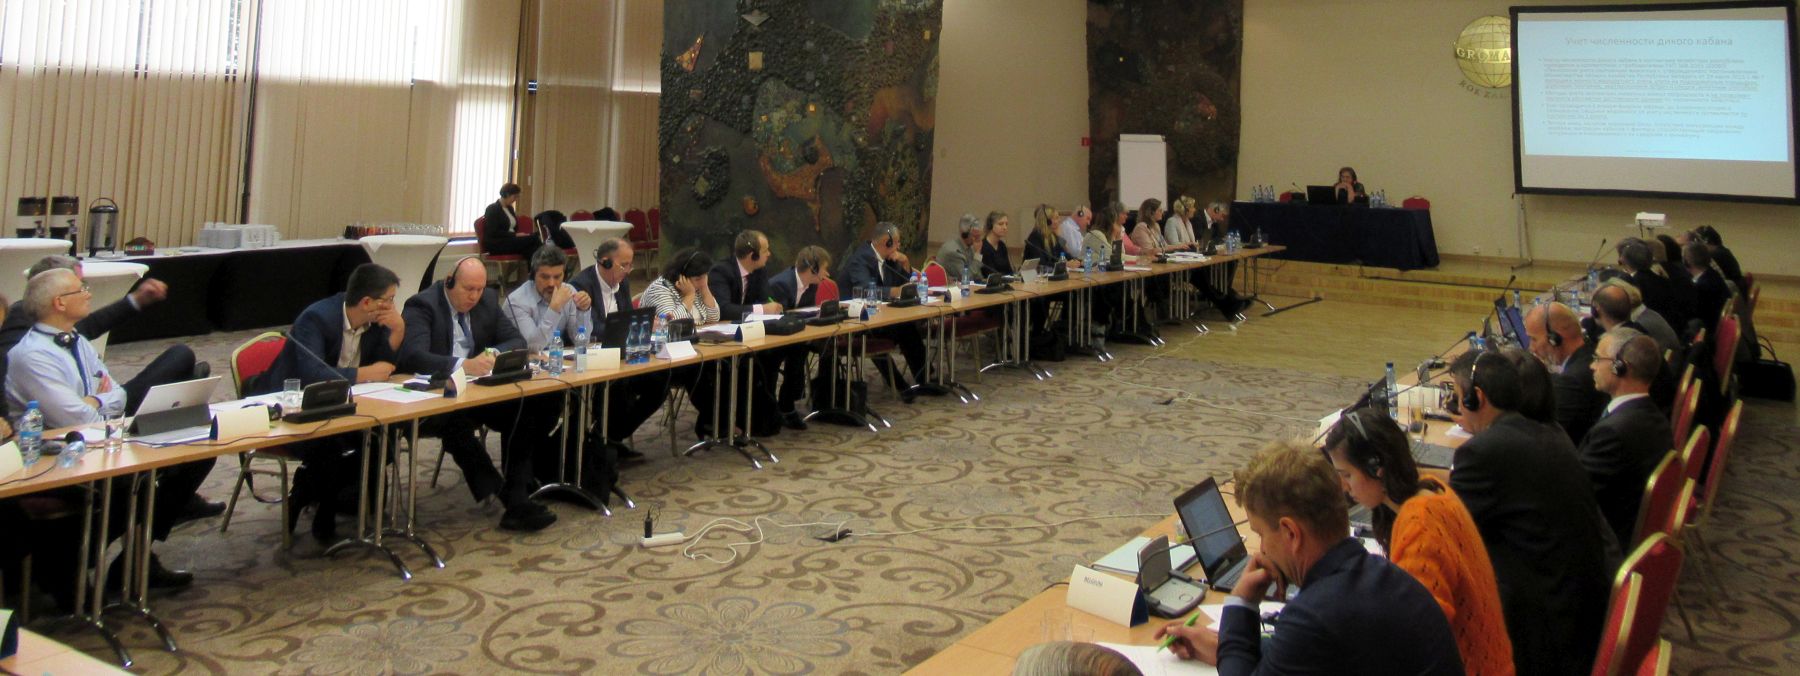 Spotkanie grupy ekspertów ds. ASF regionu Europy Środkowo-Wschodniej